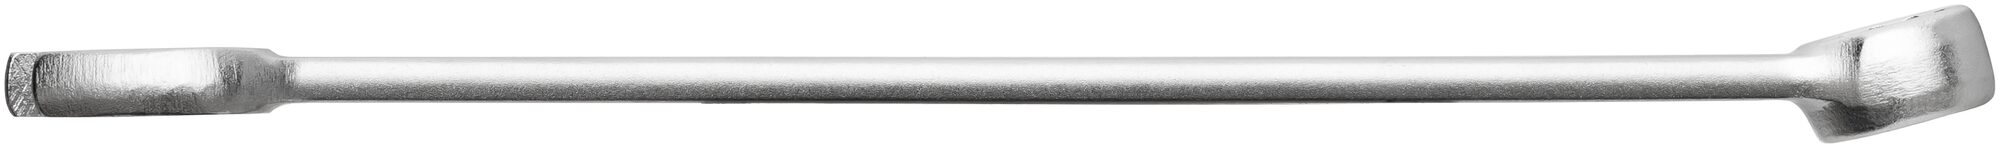 HAZET Ring-Maulschlüssel 600N-26 · Außen Doppel-Sechskant-Tractionsprofil · 26 mm